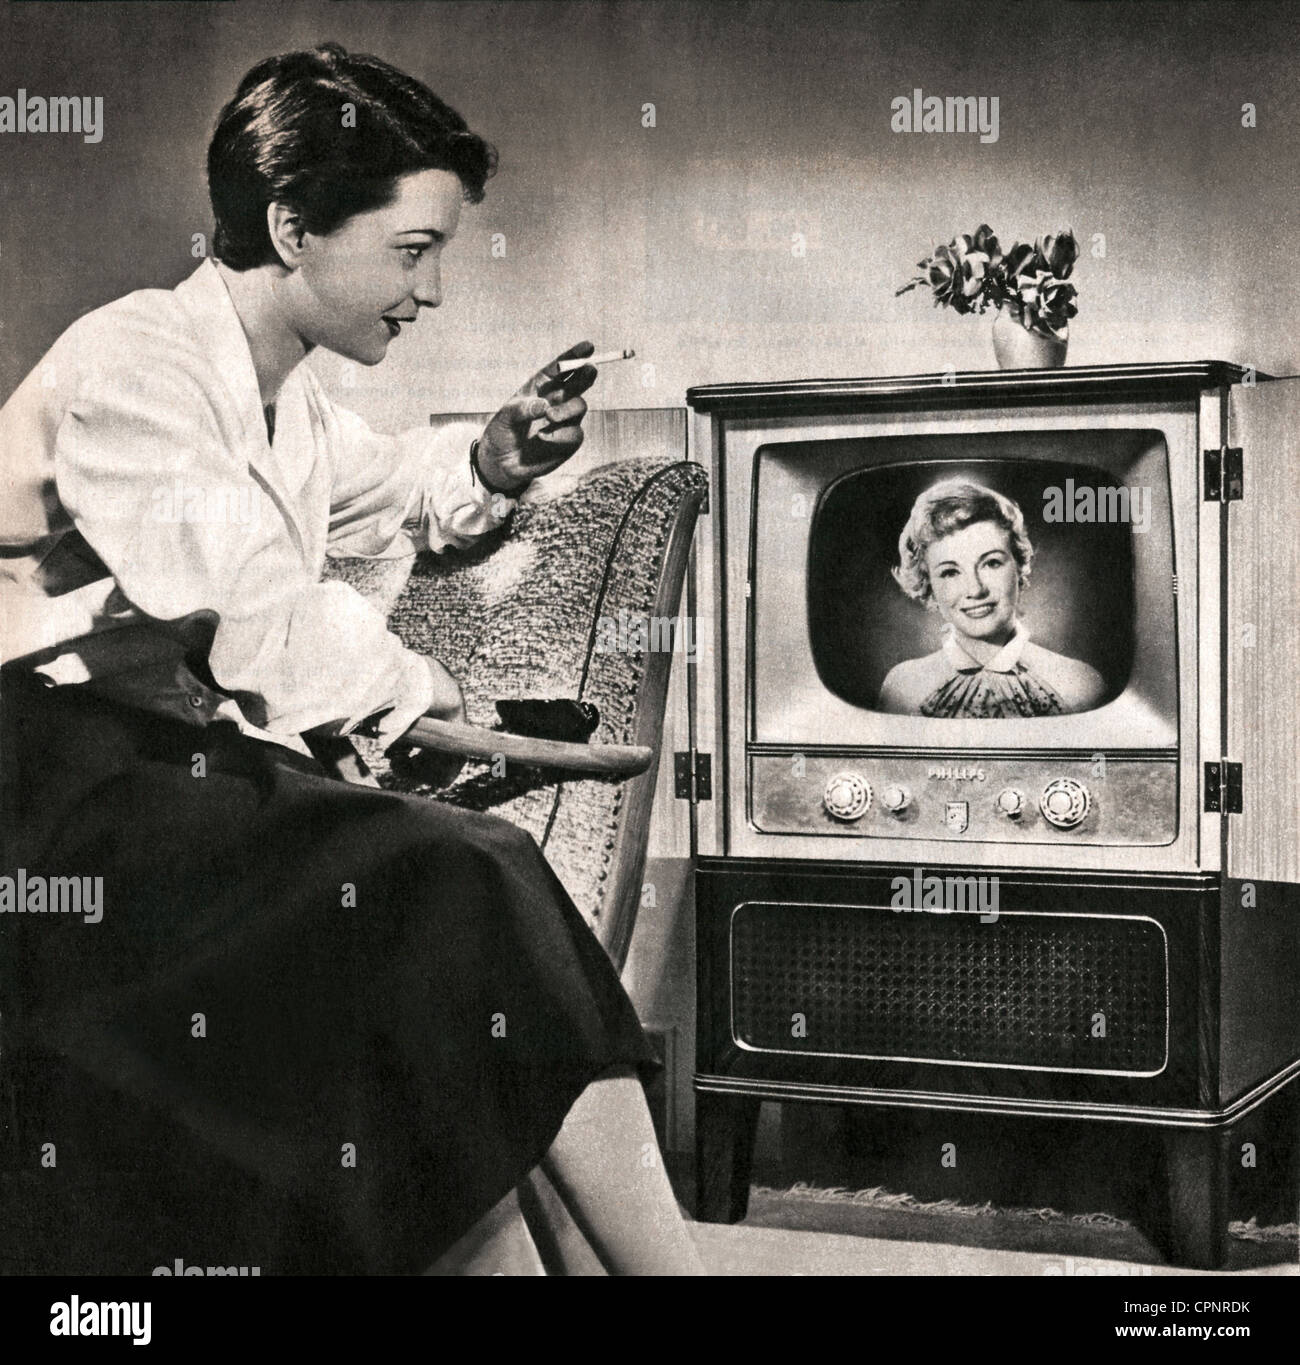 Koss, Irene, 3.8.1928 - 2.5.1996, presentatore televisivo tedesco, primo annunciatore televisivo tedesco dopo la guerra, 1950 - 1962 a NWDR, più tardi NDR, a metà lunghezza, come spettatore di fronte ad un televisore, uno dei suoi colleghi annunciatore televisivo Angelika Feldmann è sullo schermo, Germania, 1955, Foto Stock